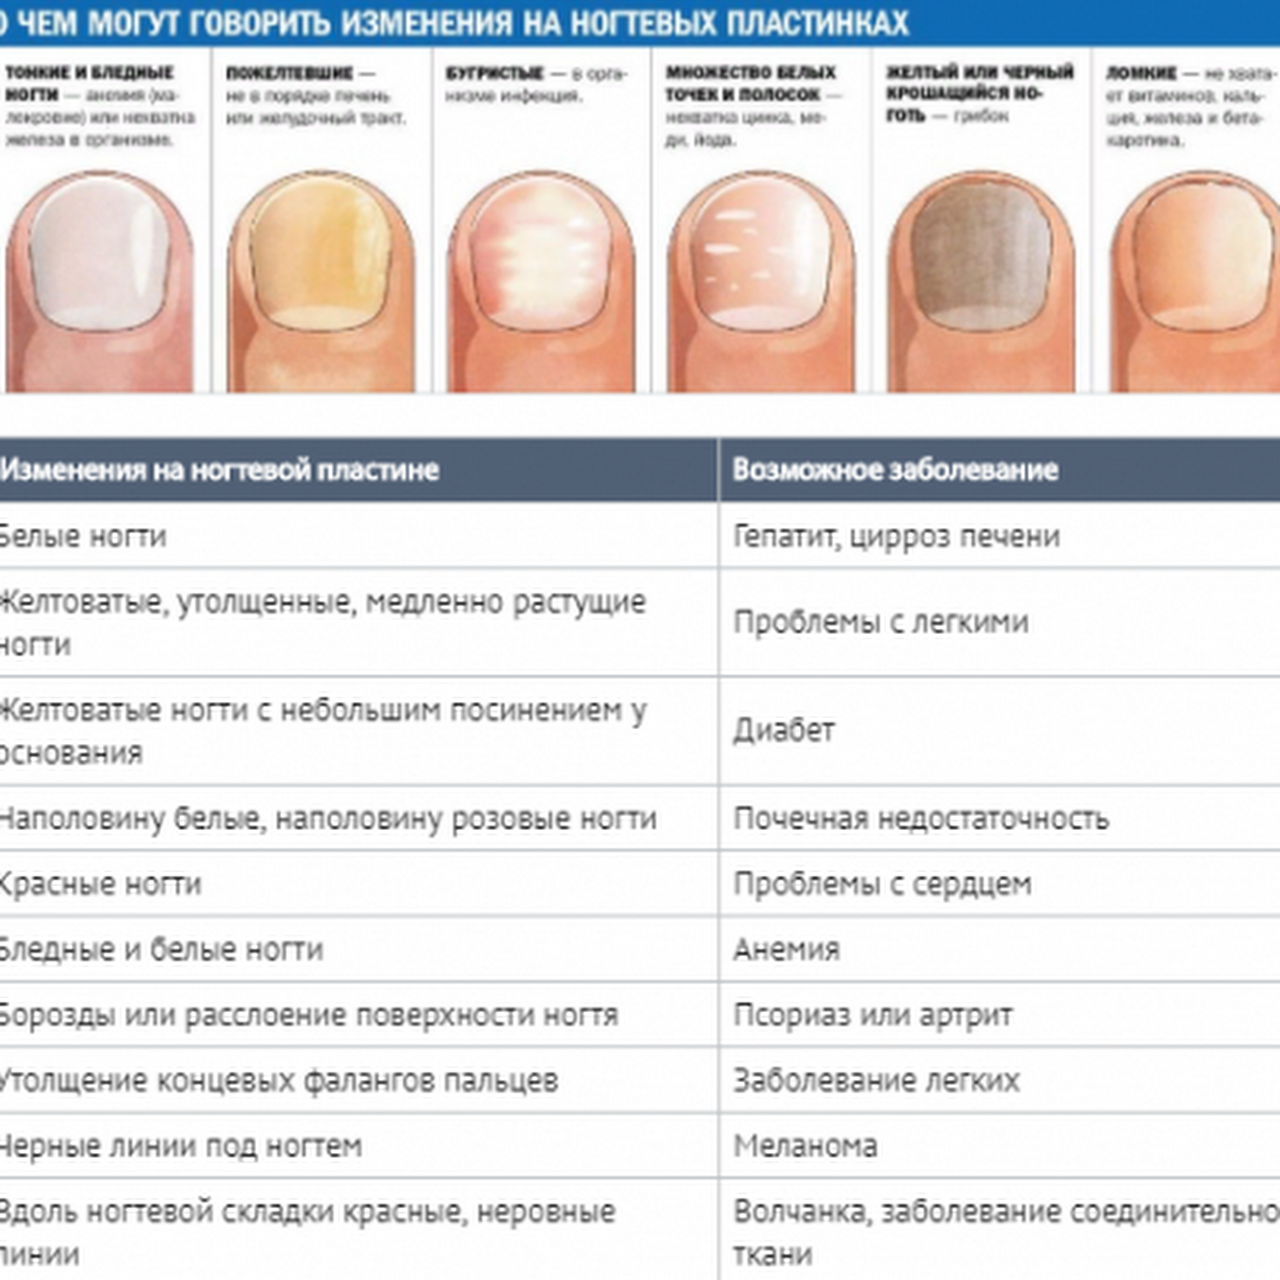 Изменение будет скажите. Определение болезни по состоянию ногтей. Заболевания ногтей на руках таблица описание. Как определить по цвету ногтей заболевание. Выявление болезни по ногтям.